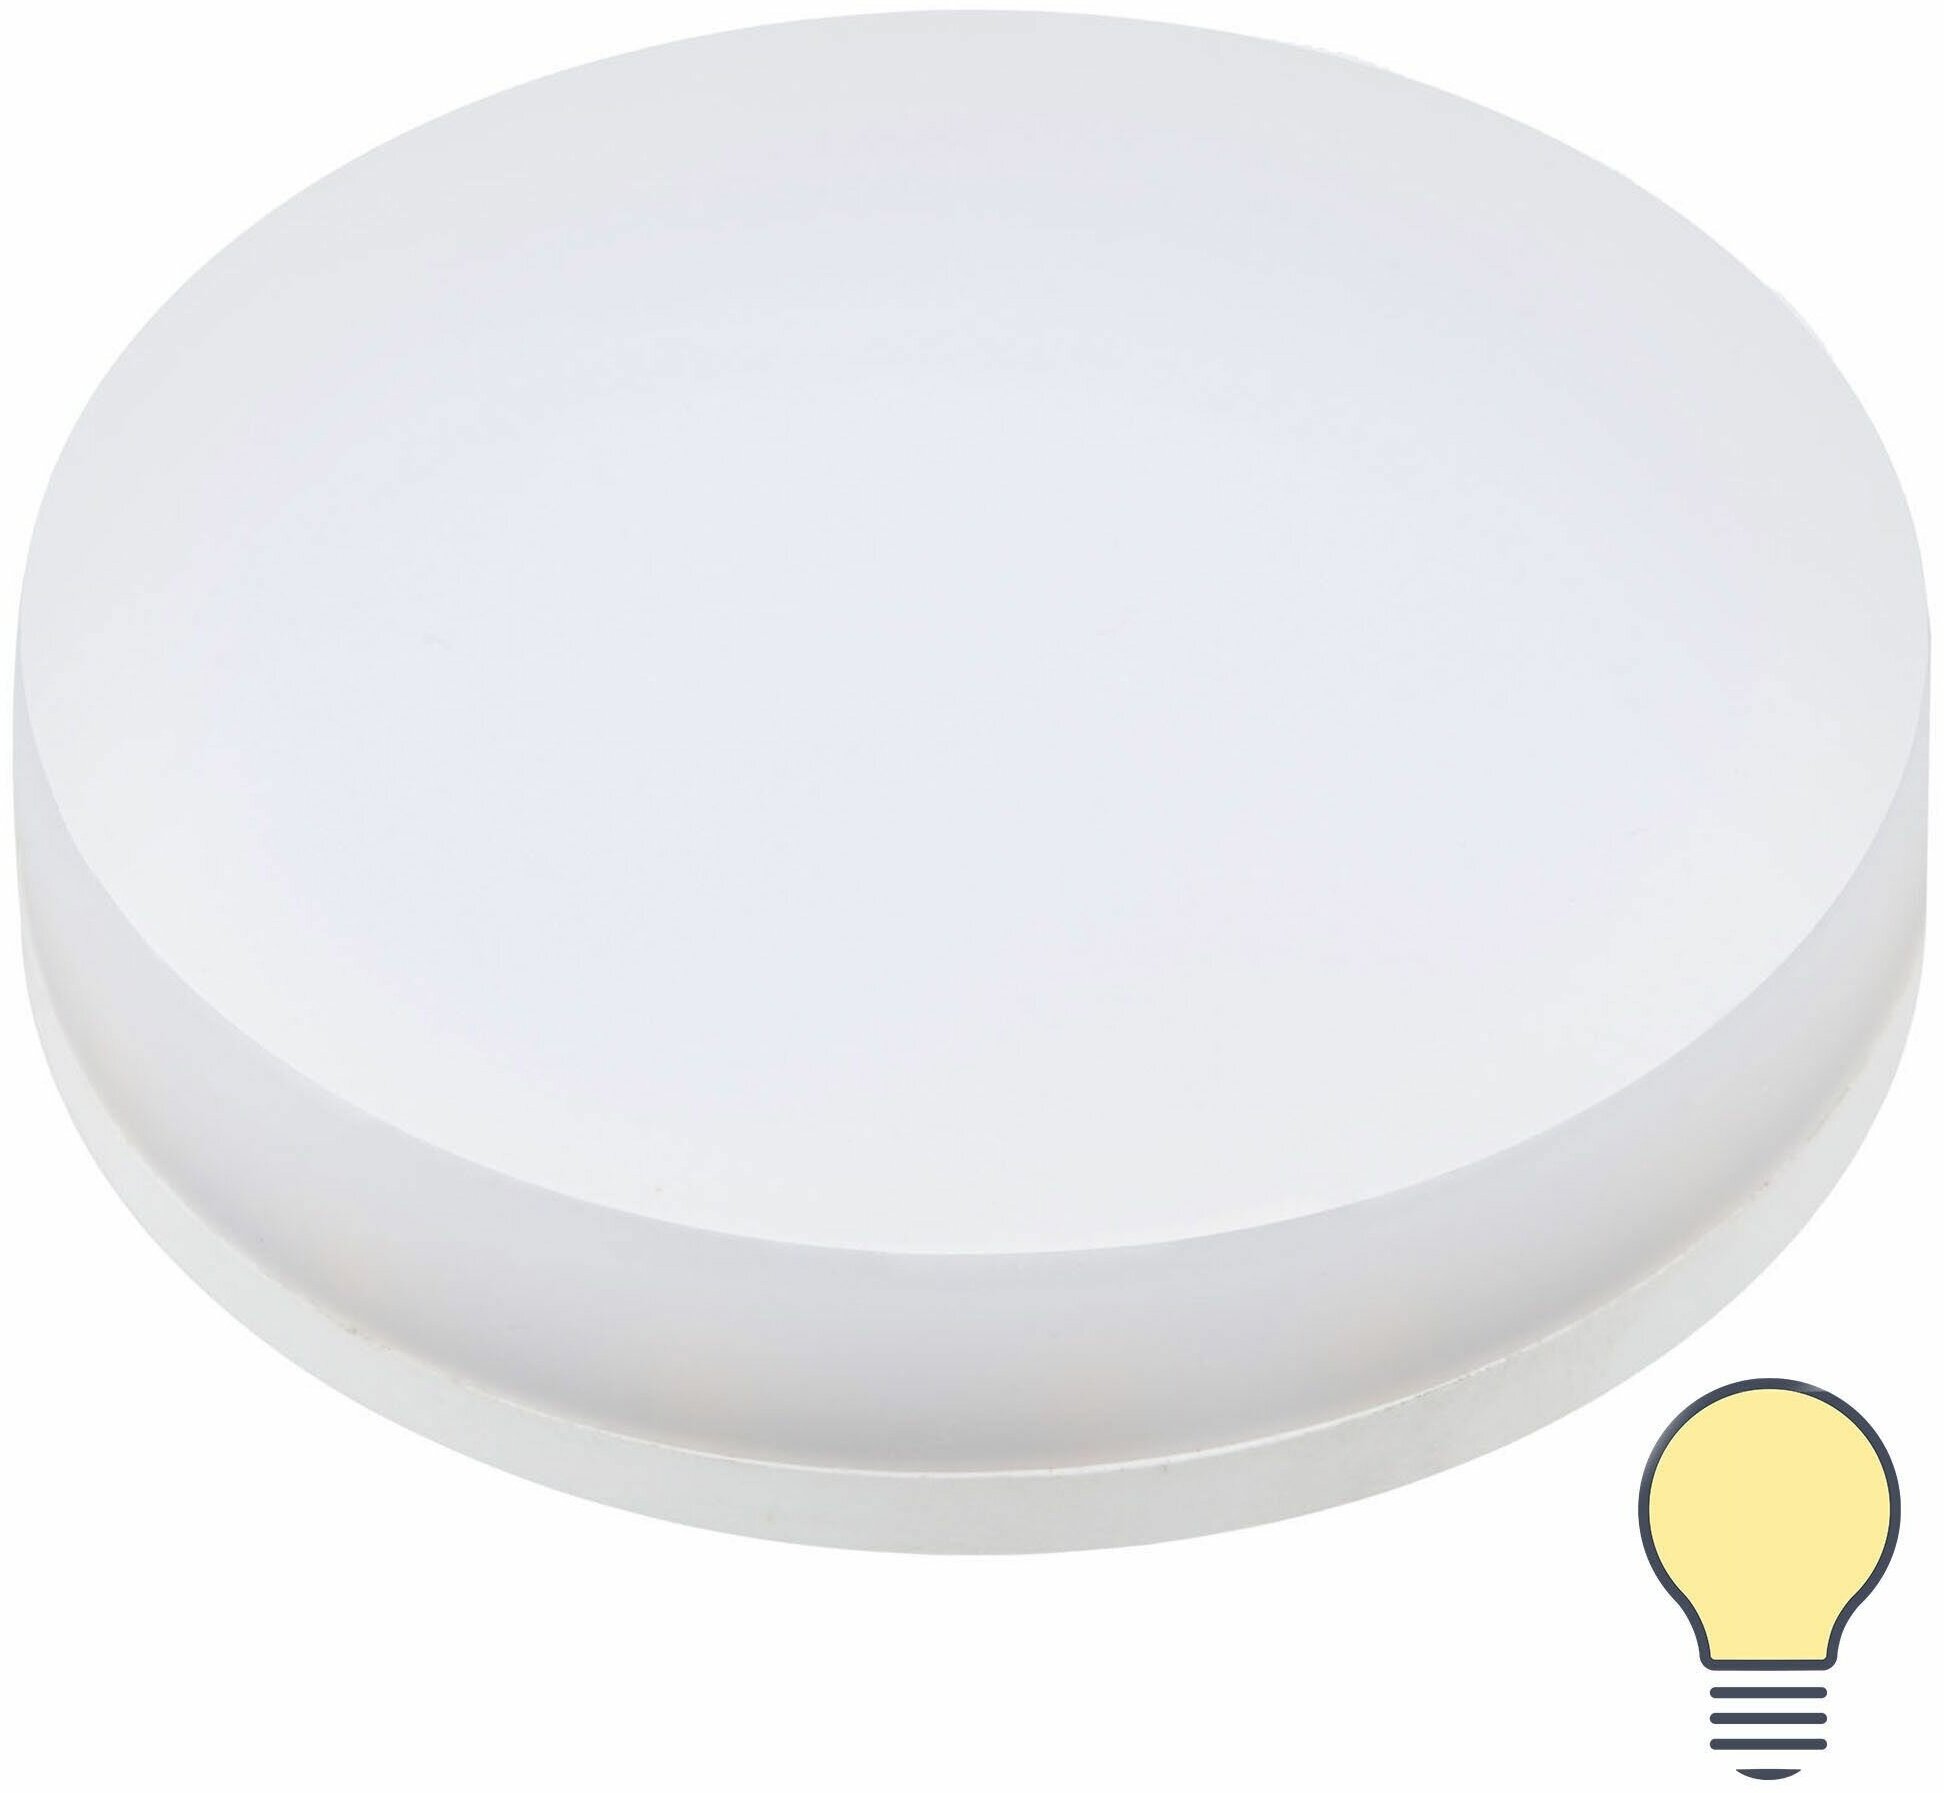 Лампа светодиодная Volpe GX53 210-240 В 8 Вт спот матовая 560 лм, теплый белый свет